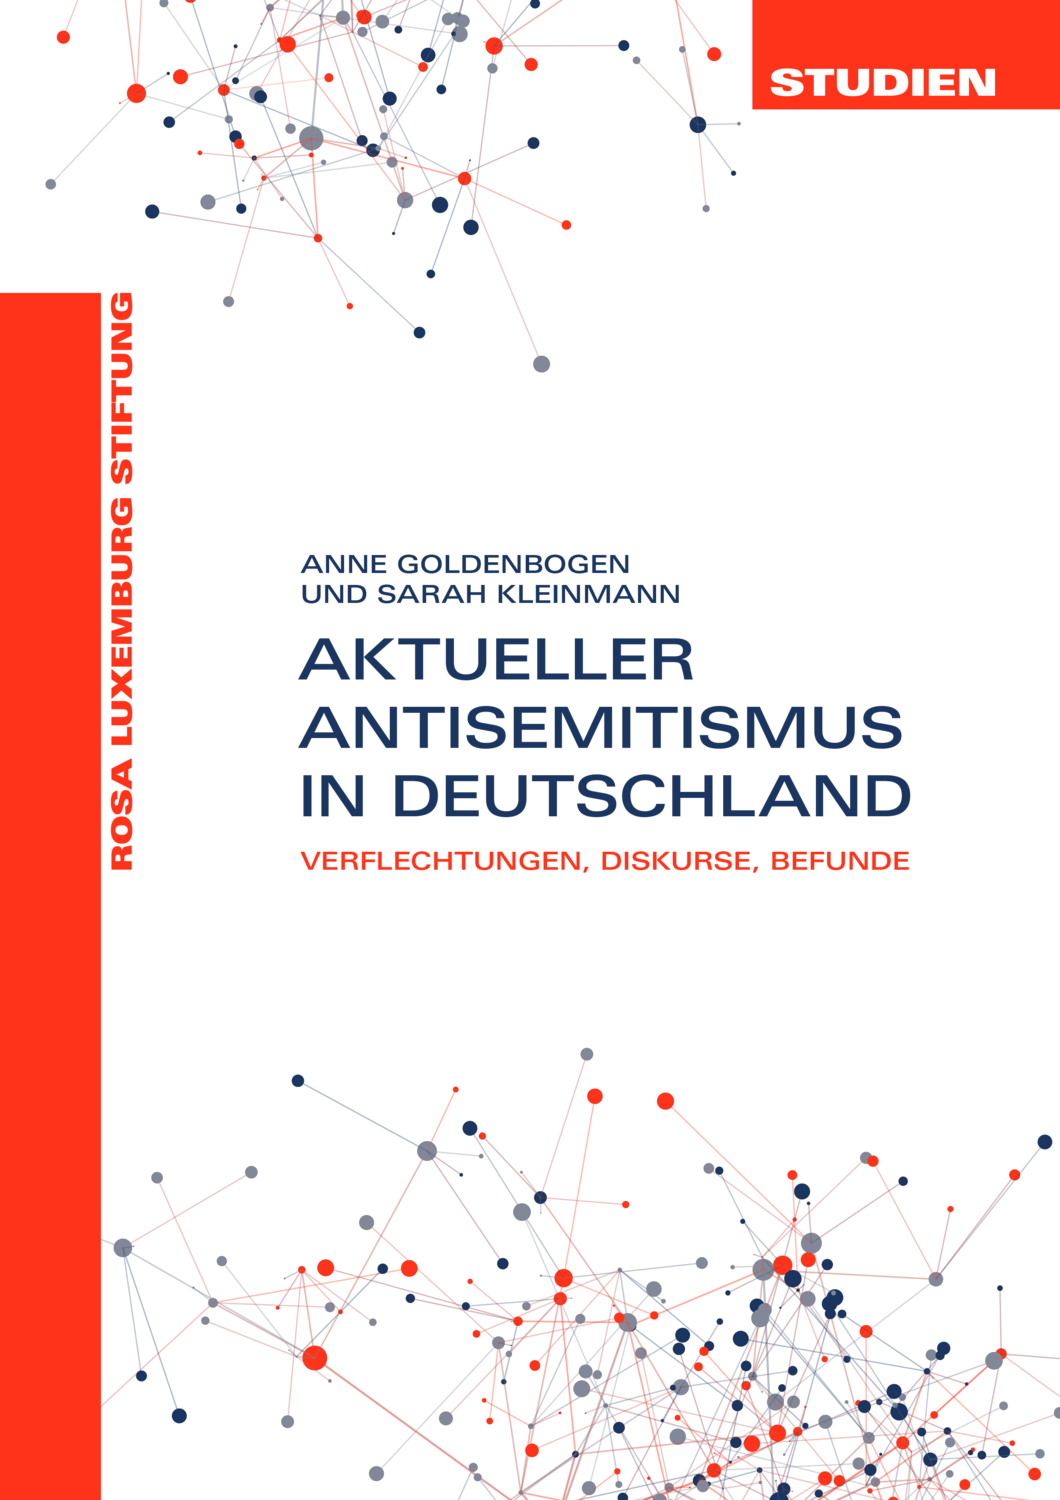 Aktueller Antisemitismus in Deutschland (Studien 01/2021)